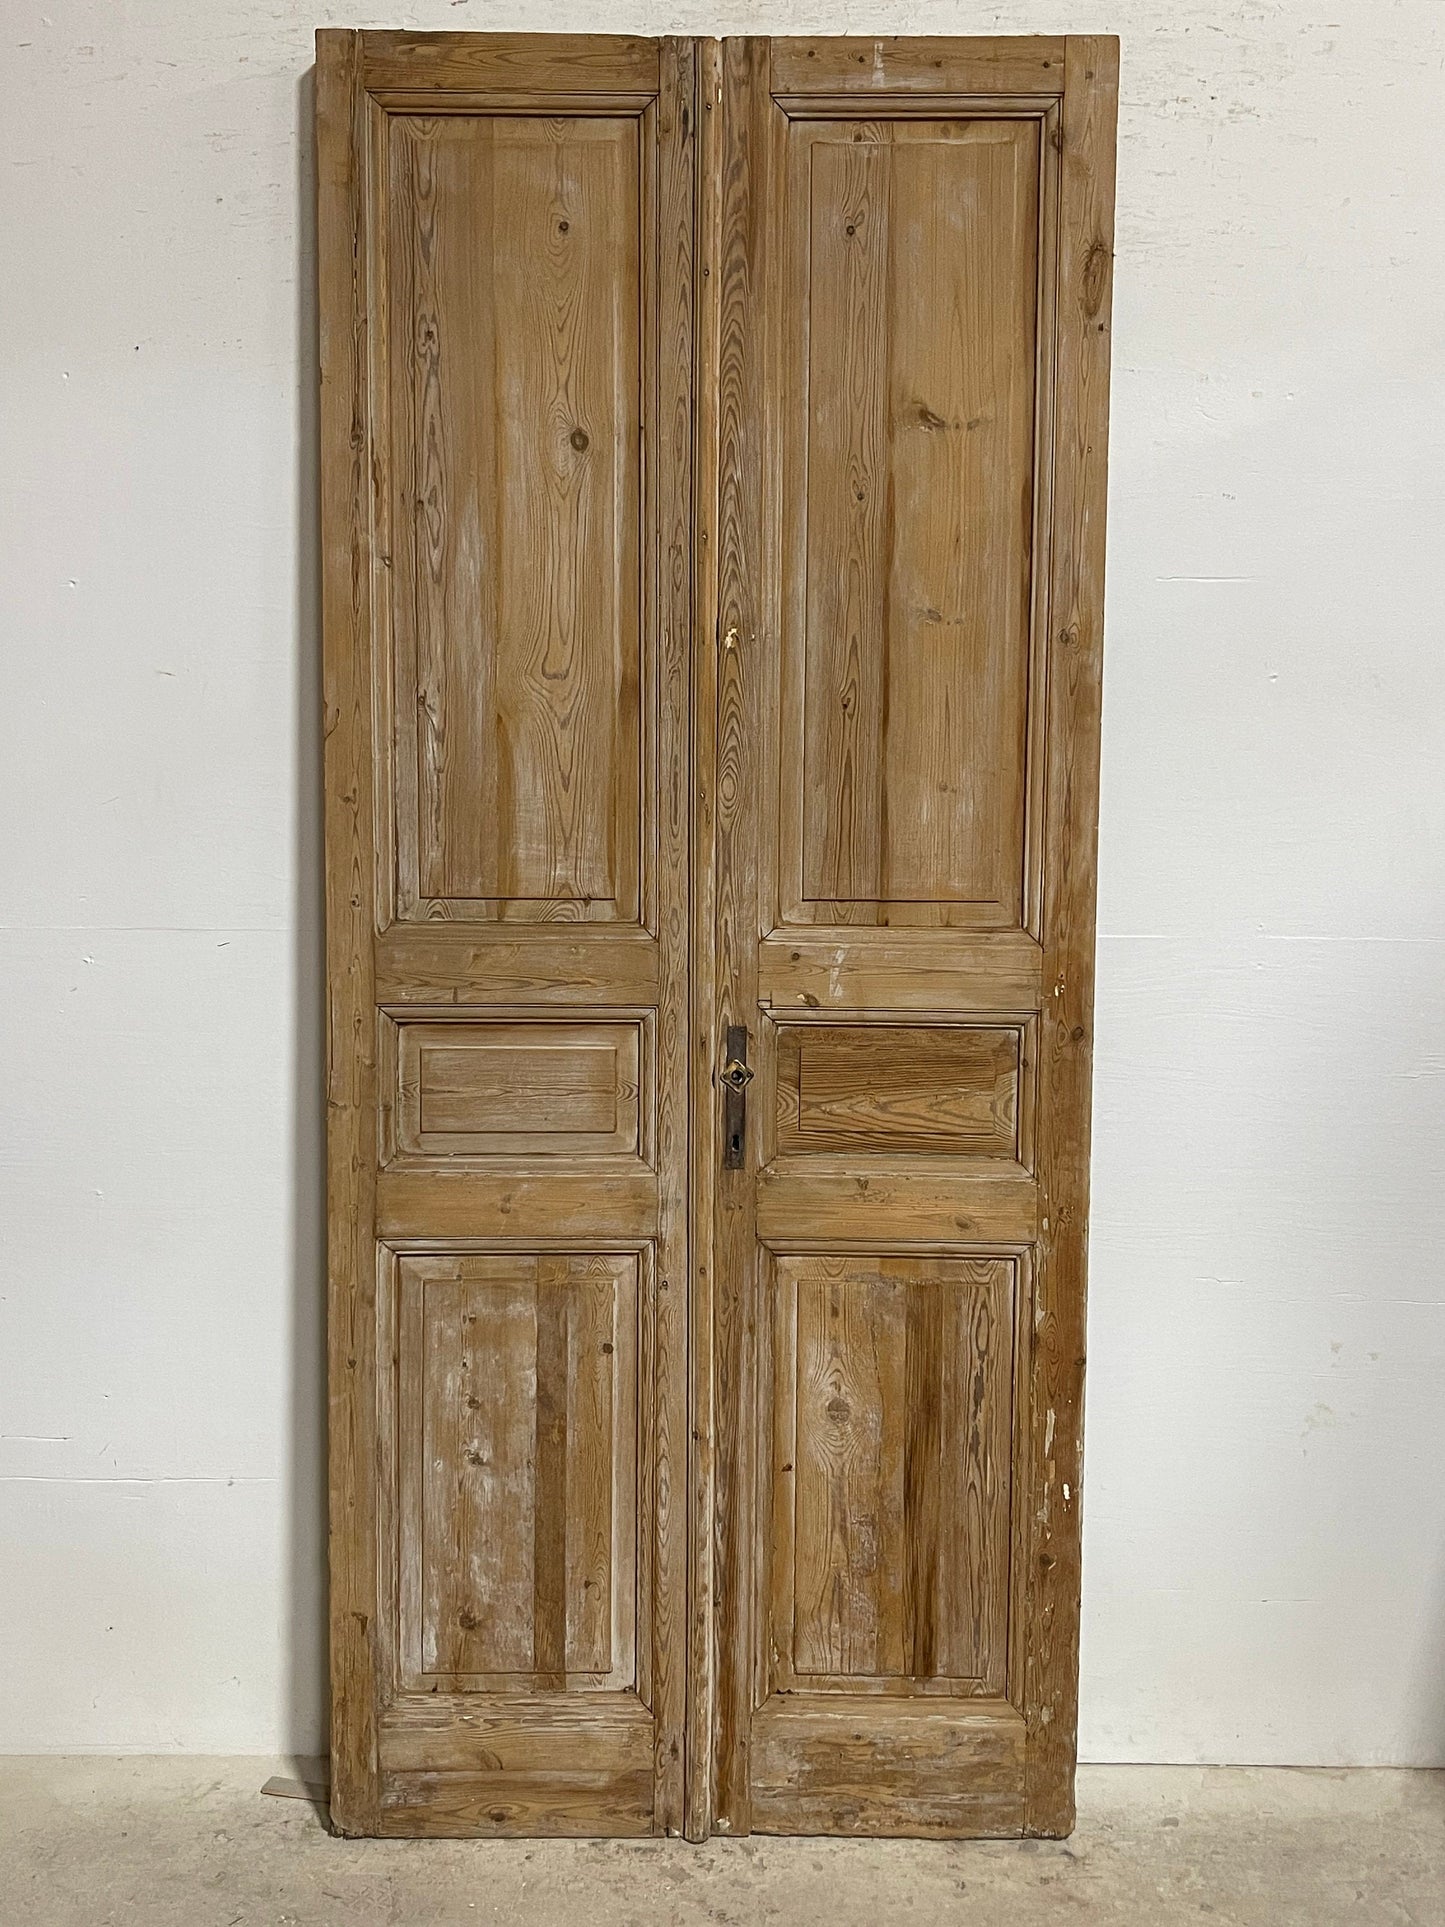 Antique French panel doors (93x40) I101s